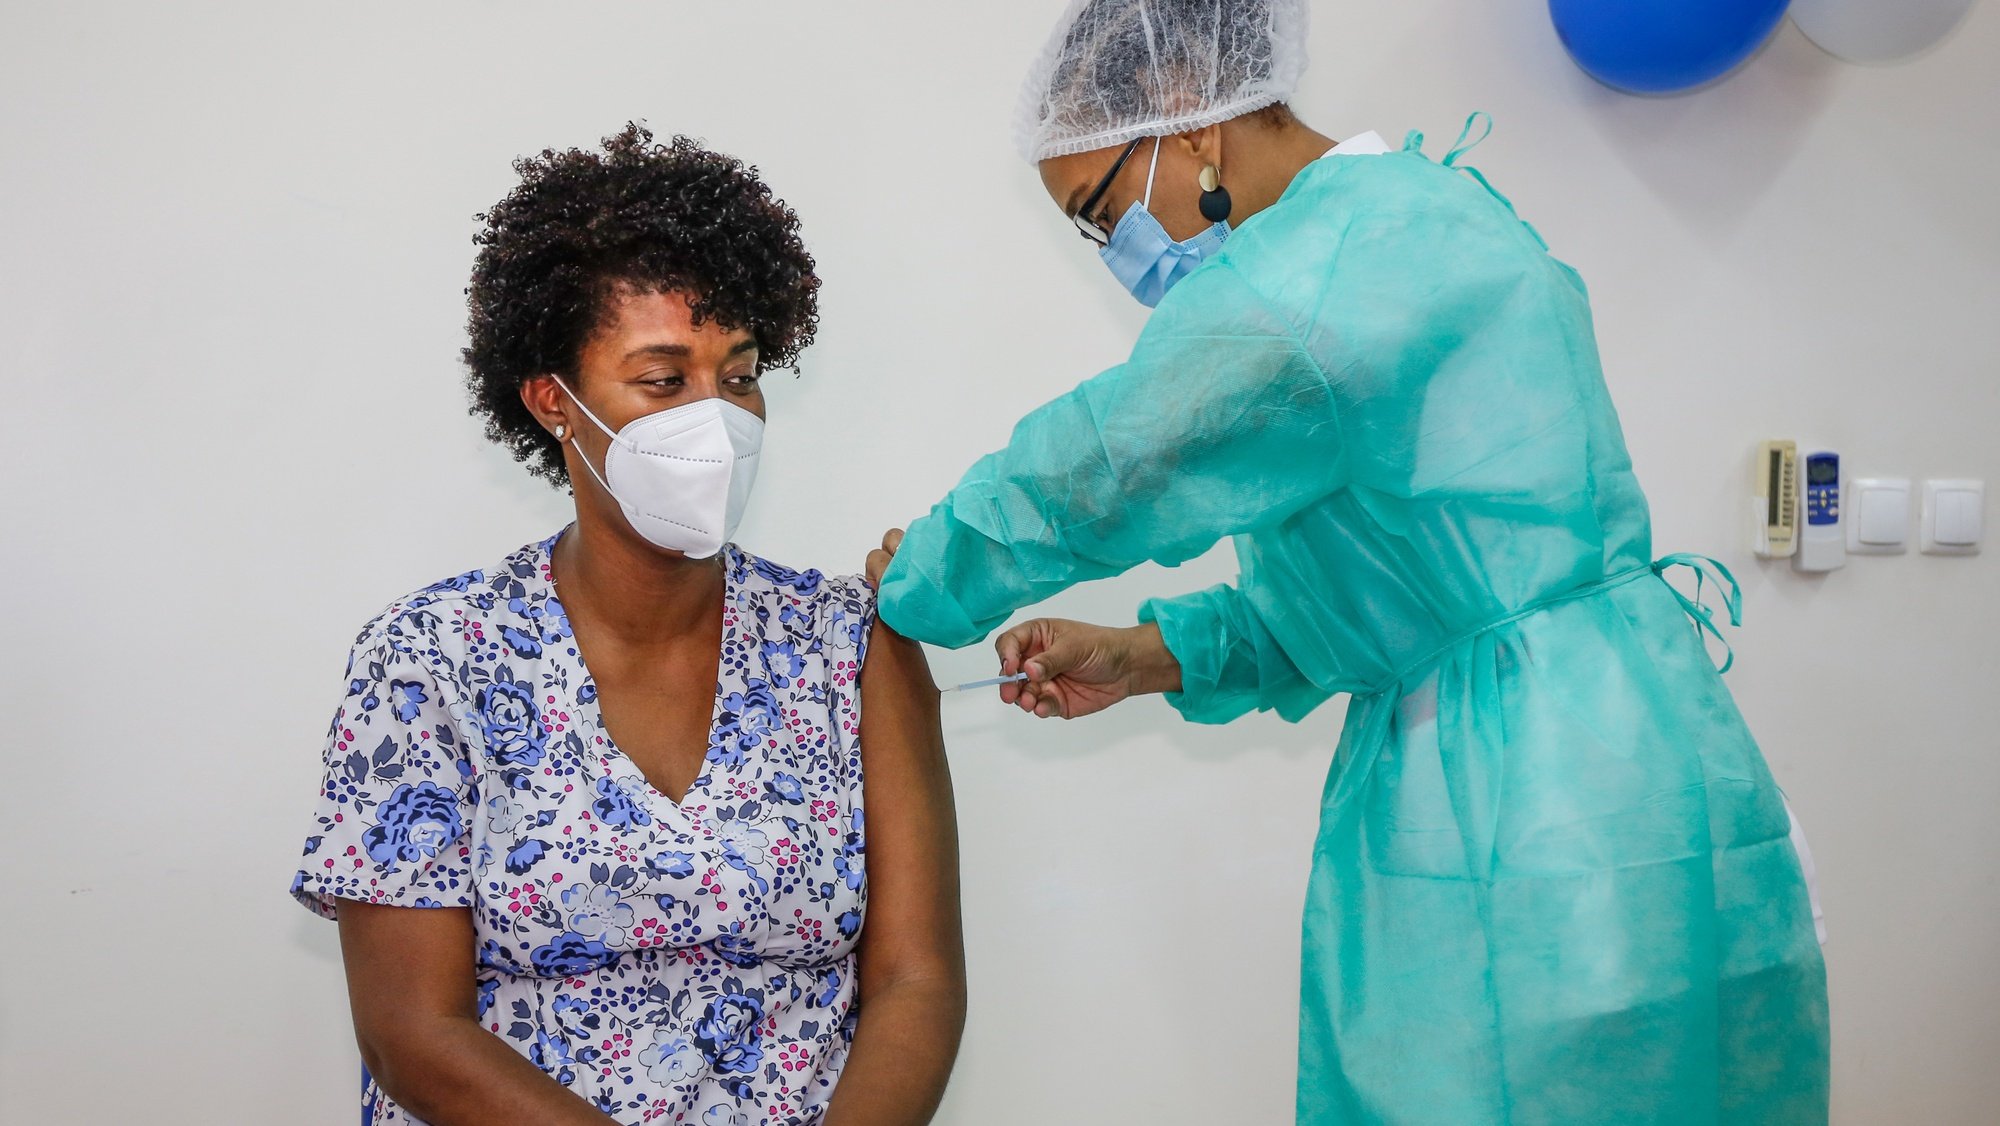 Uma profissional de saúde administra a vacina da Pfizer a covid-19 a um dos seis profissionais de saúde da Praia, antecedendo o início da campanha de vacinação em Cabo Verde, sexta-feira, precisamente um ano depois da chegada da pandemia ao arquipélago, no Centro de Saúde da Achada de Santo António, na Praia, Cabo Verde, 18 de março de 2021. FERNANDO DE PINA/LUSA